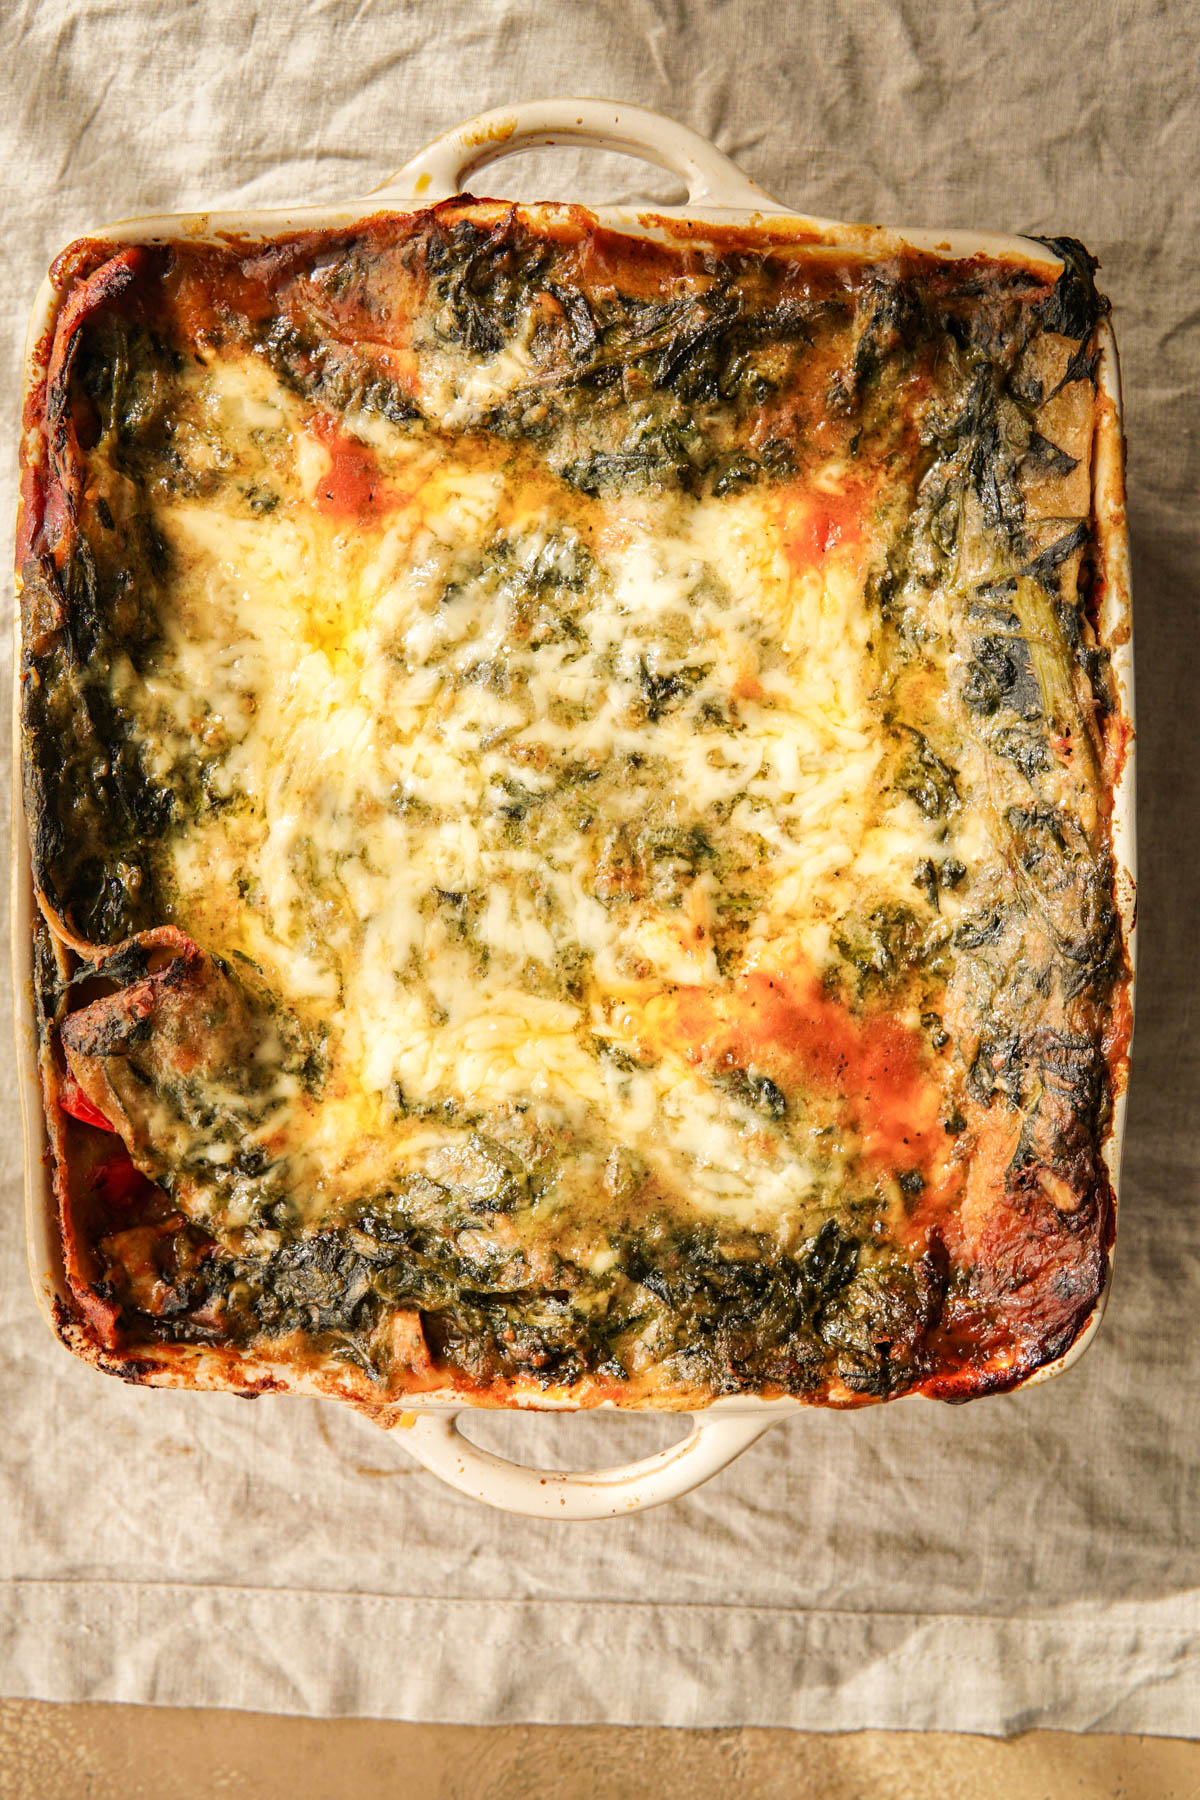 Recept voor vegetarische lasagne met spinazie